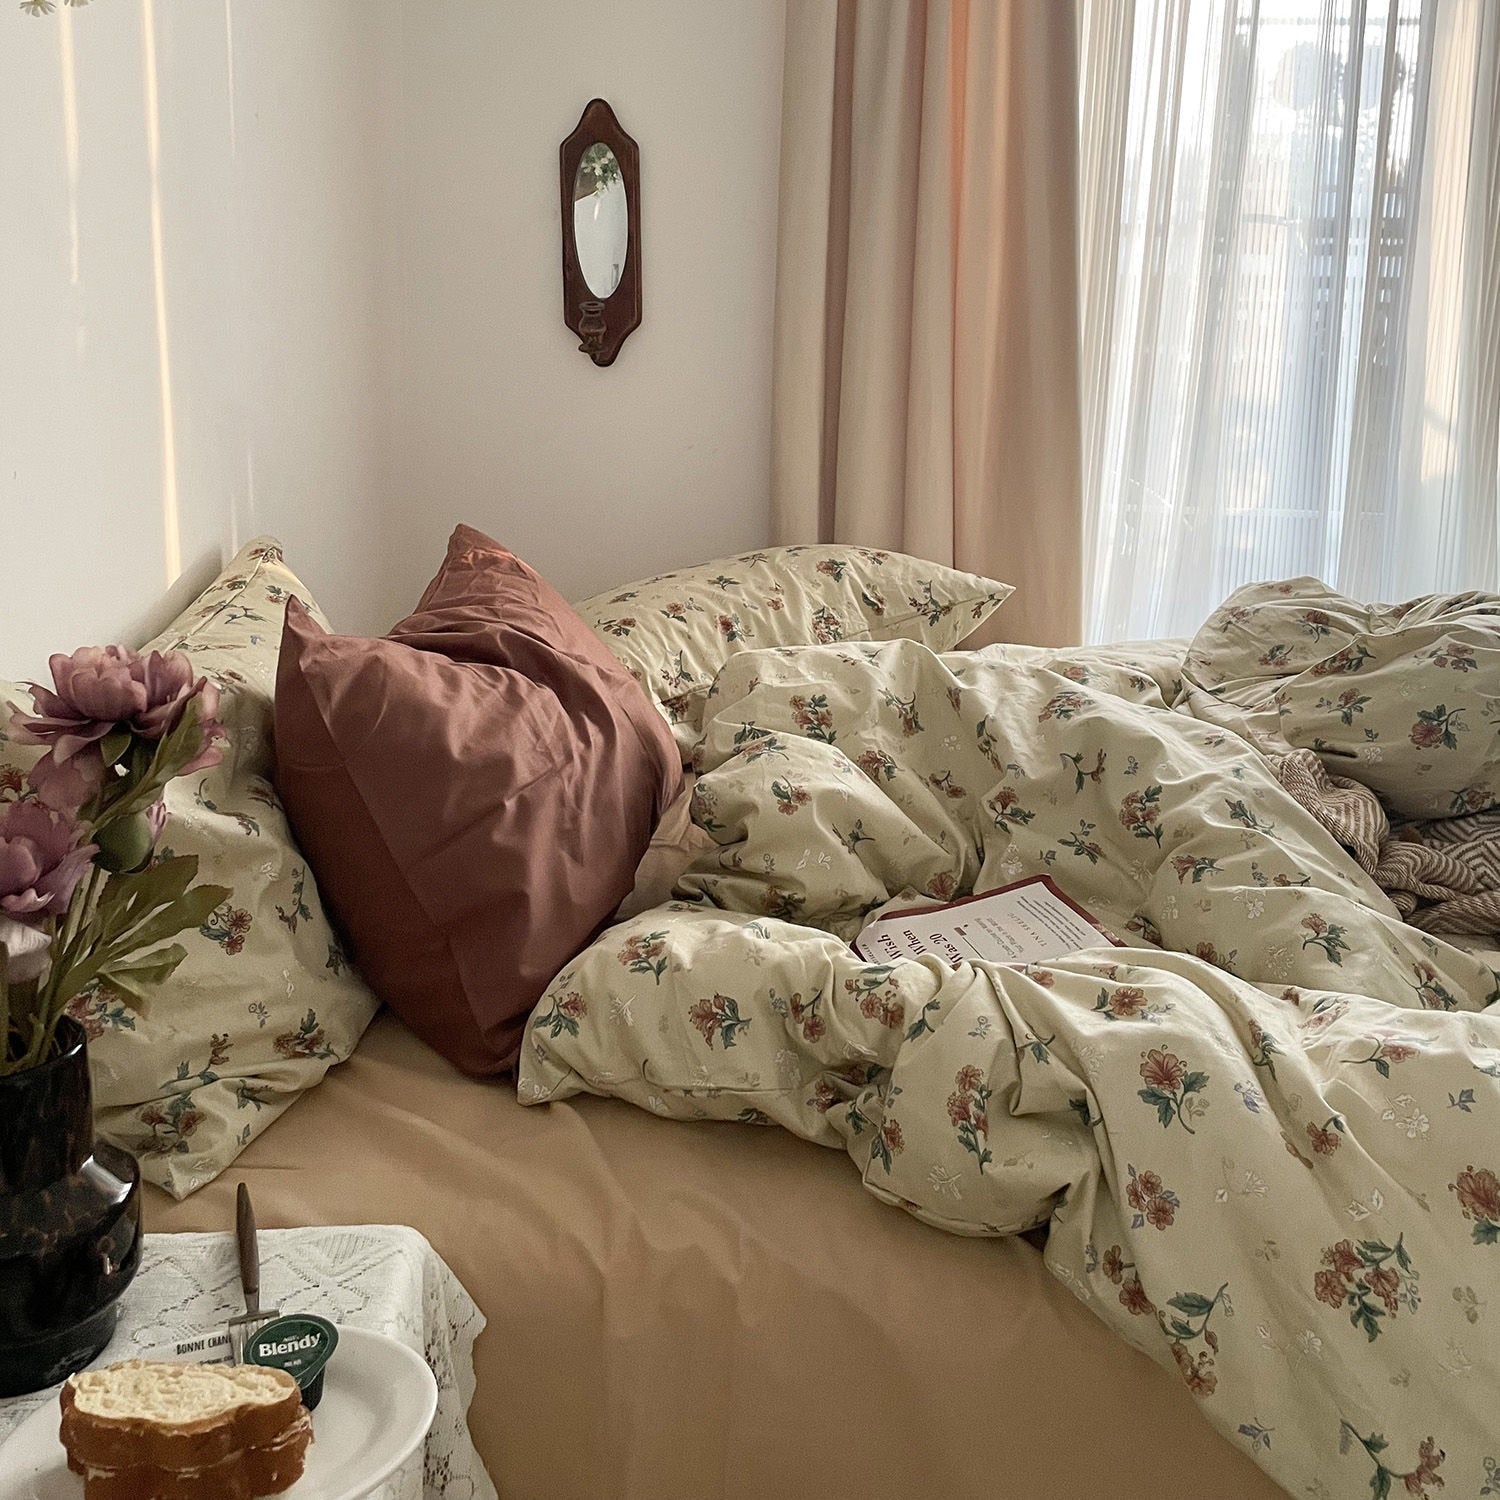 Vintage Floral bedding Set 花柄寝具カバー3点/4点セット